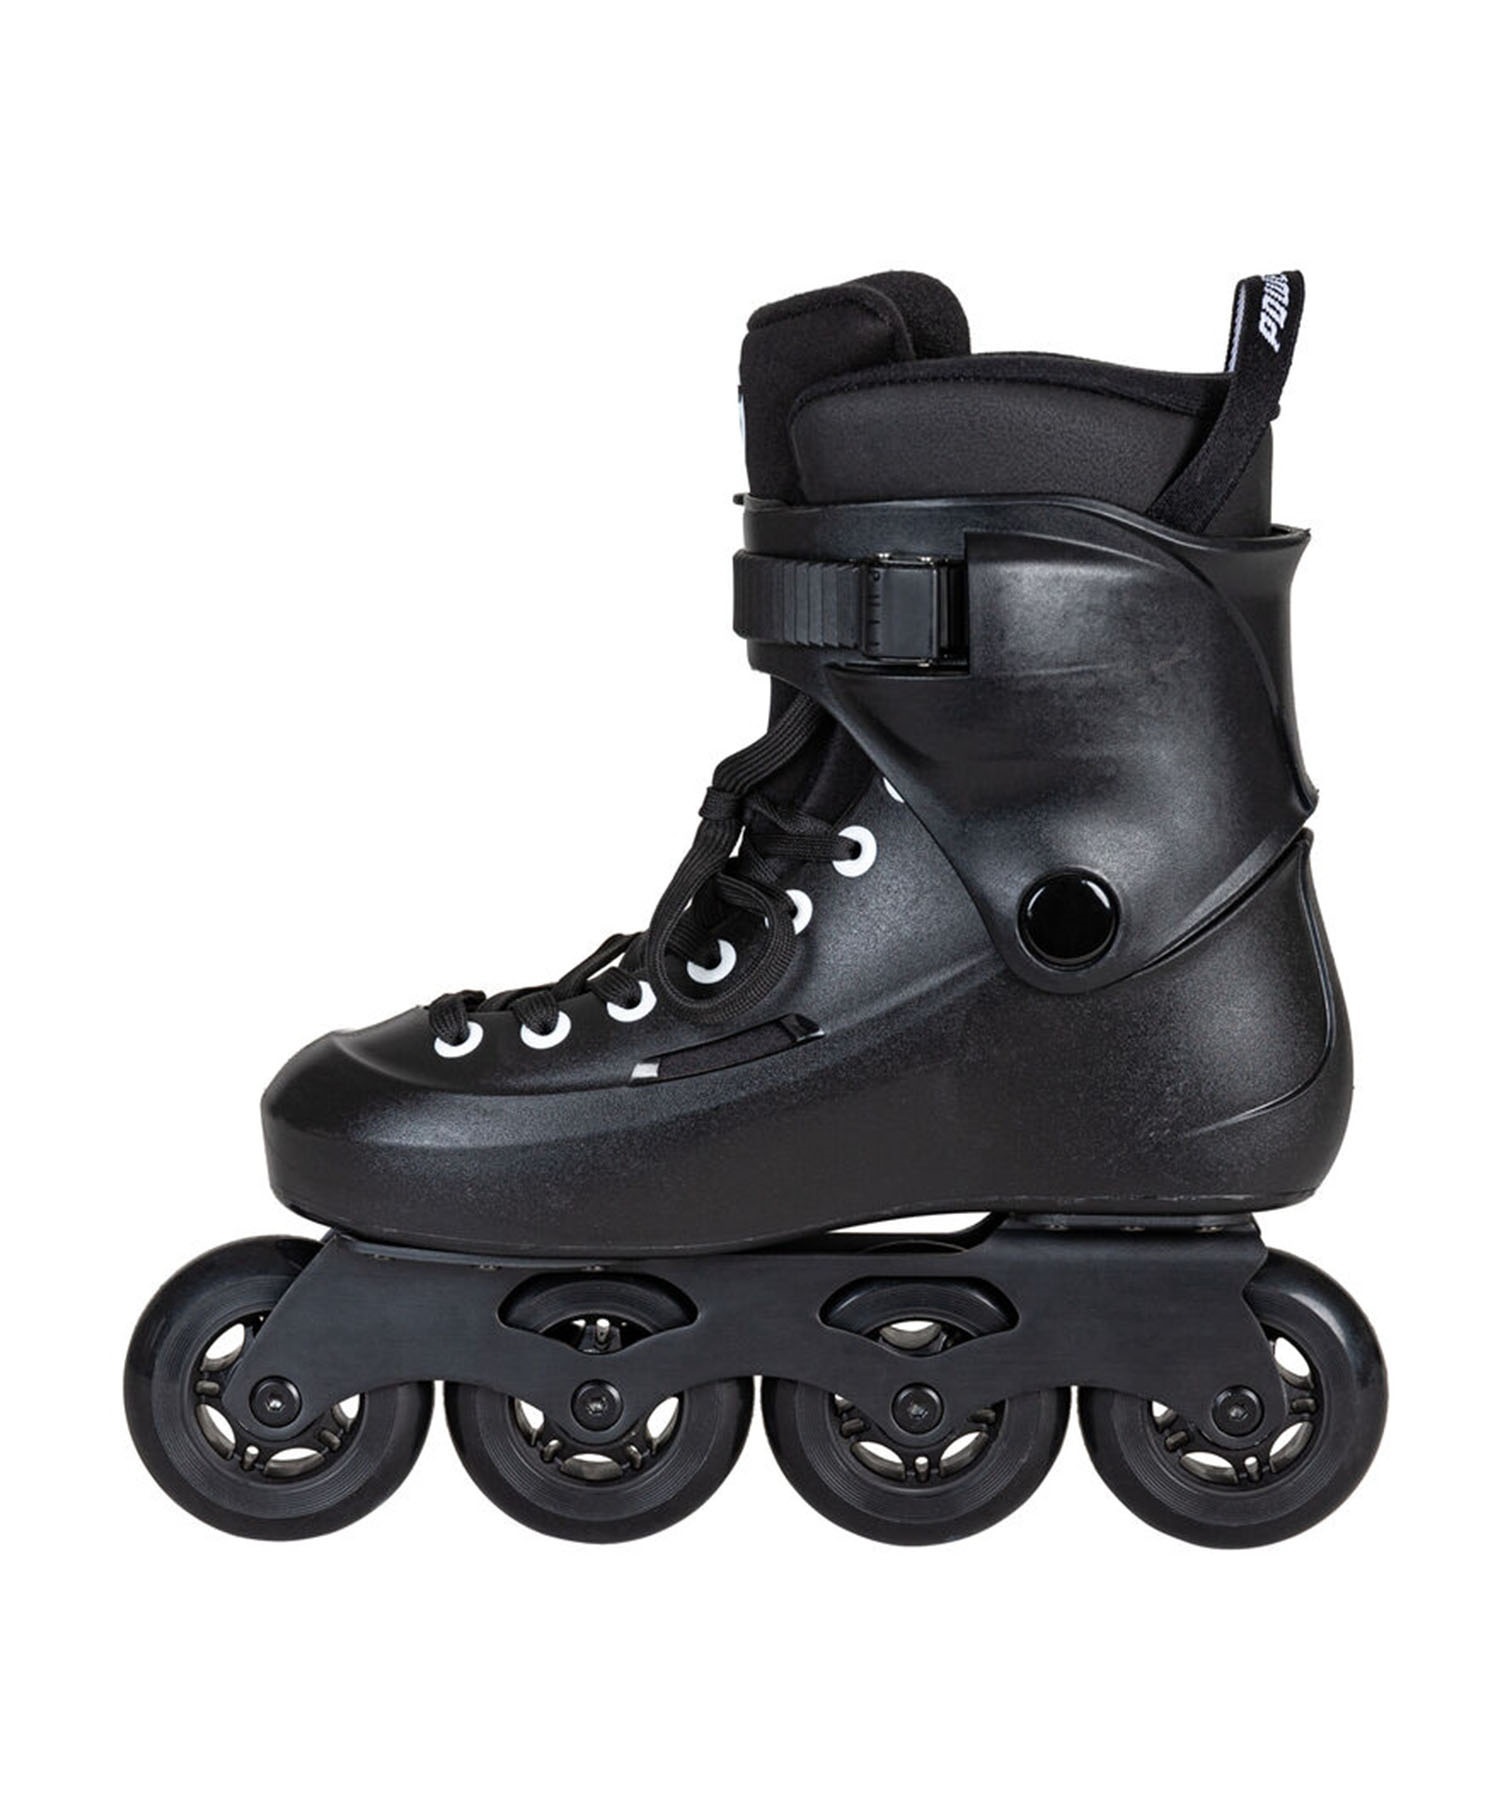 インラインスケート POWERSLIDE パワースライド Urban skate Zoom Black 80 PS908442(BK-23.5cm)